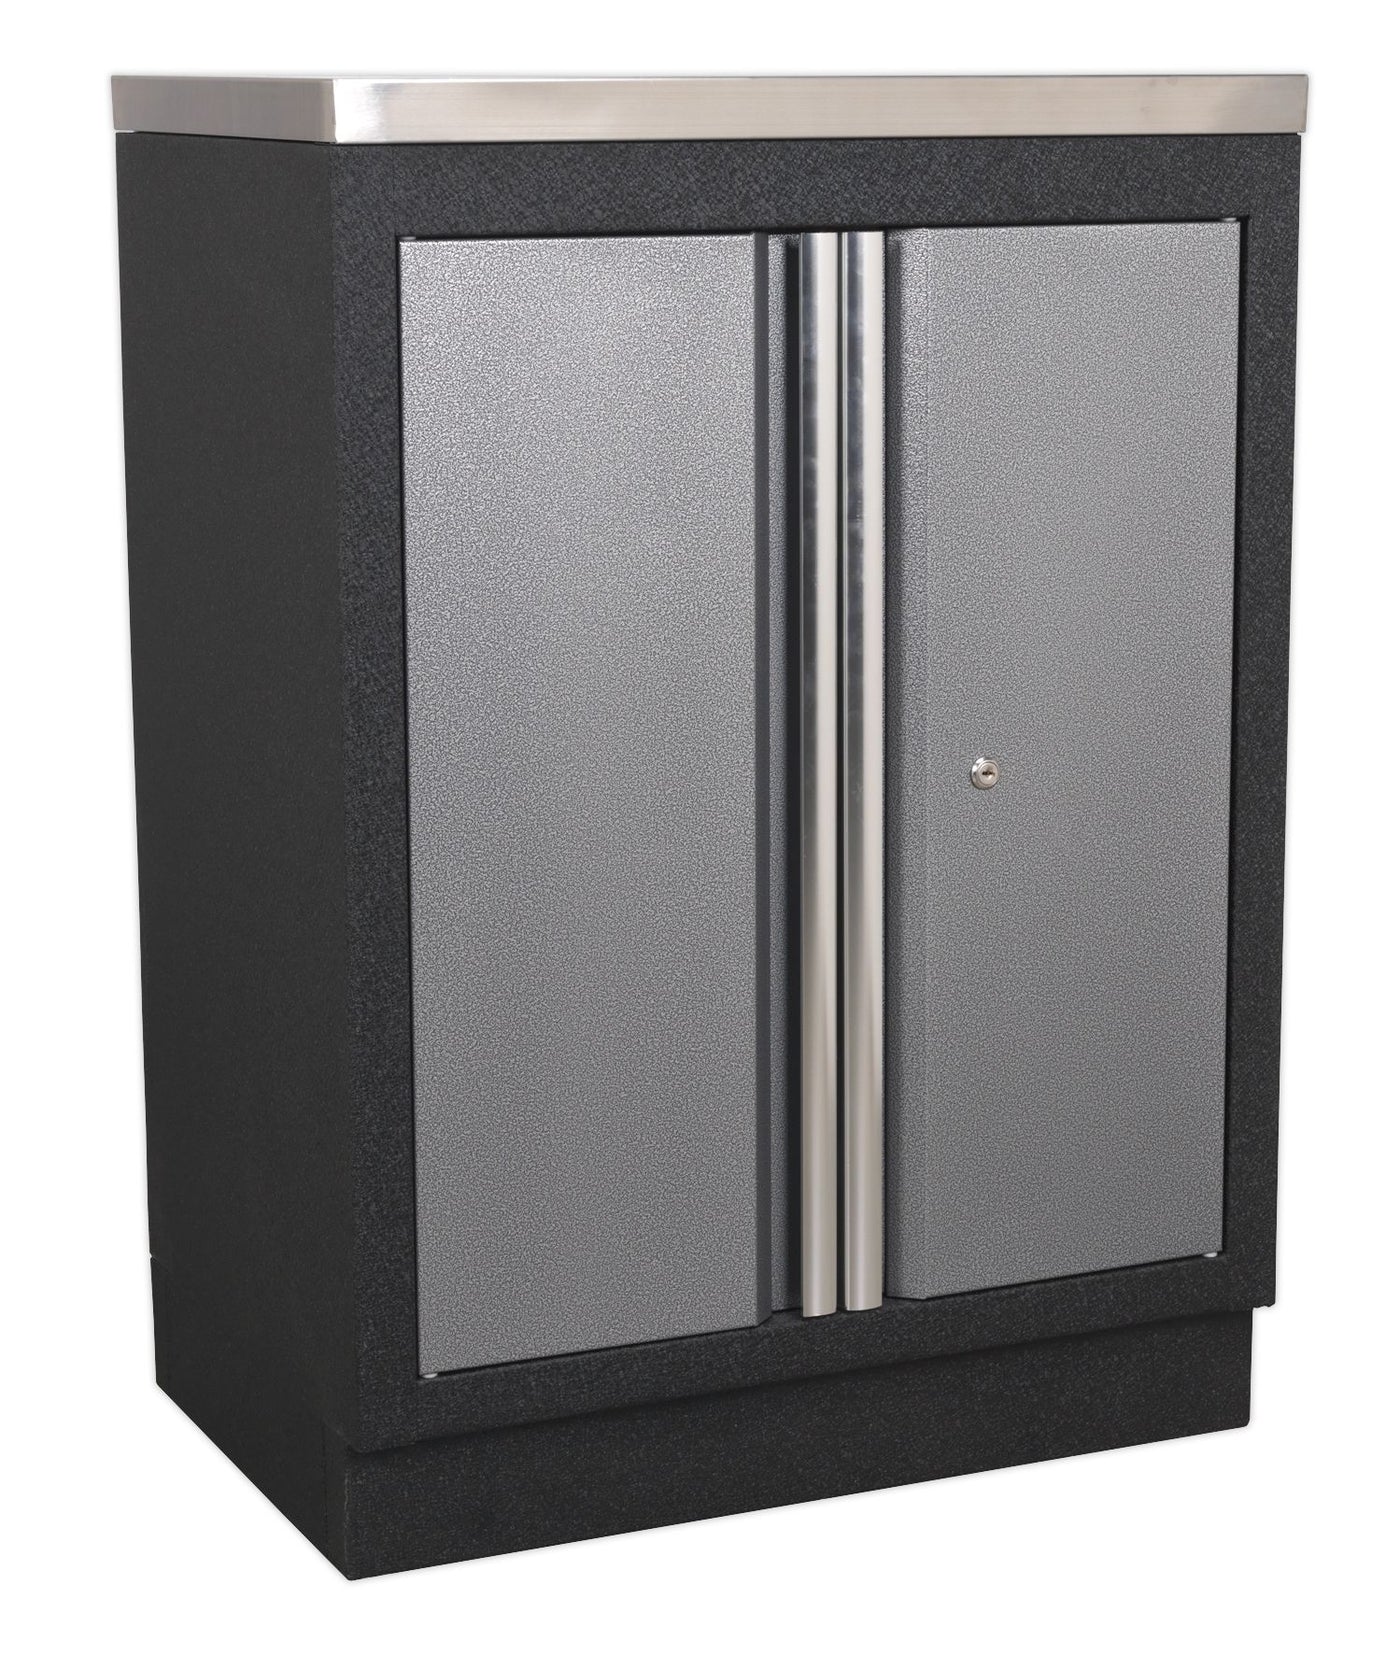 Sealey 5 Cabinet Set APMSSTACK02SS - Superline Pro Range